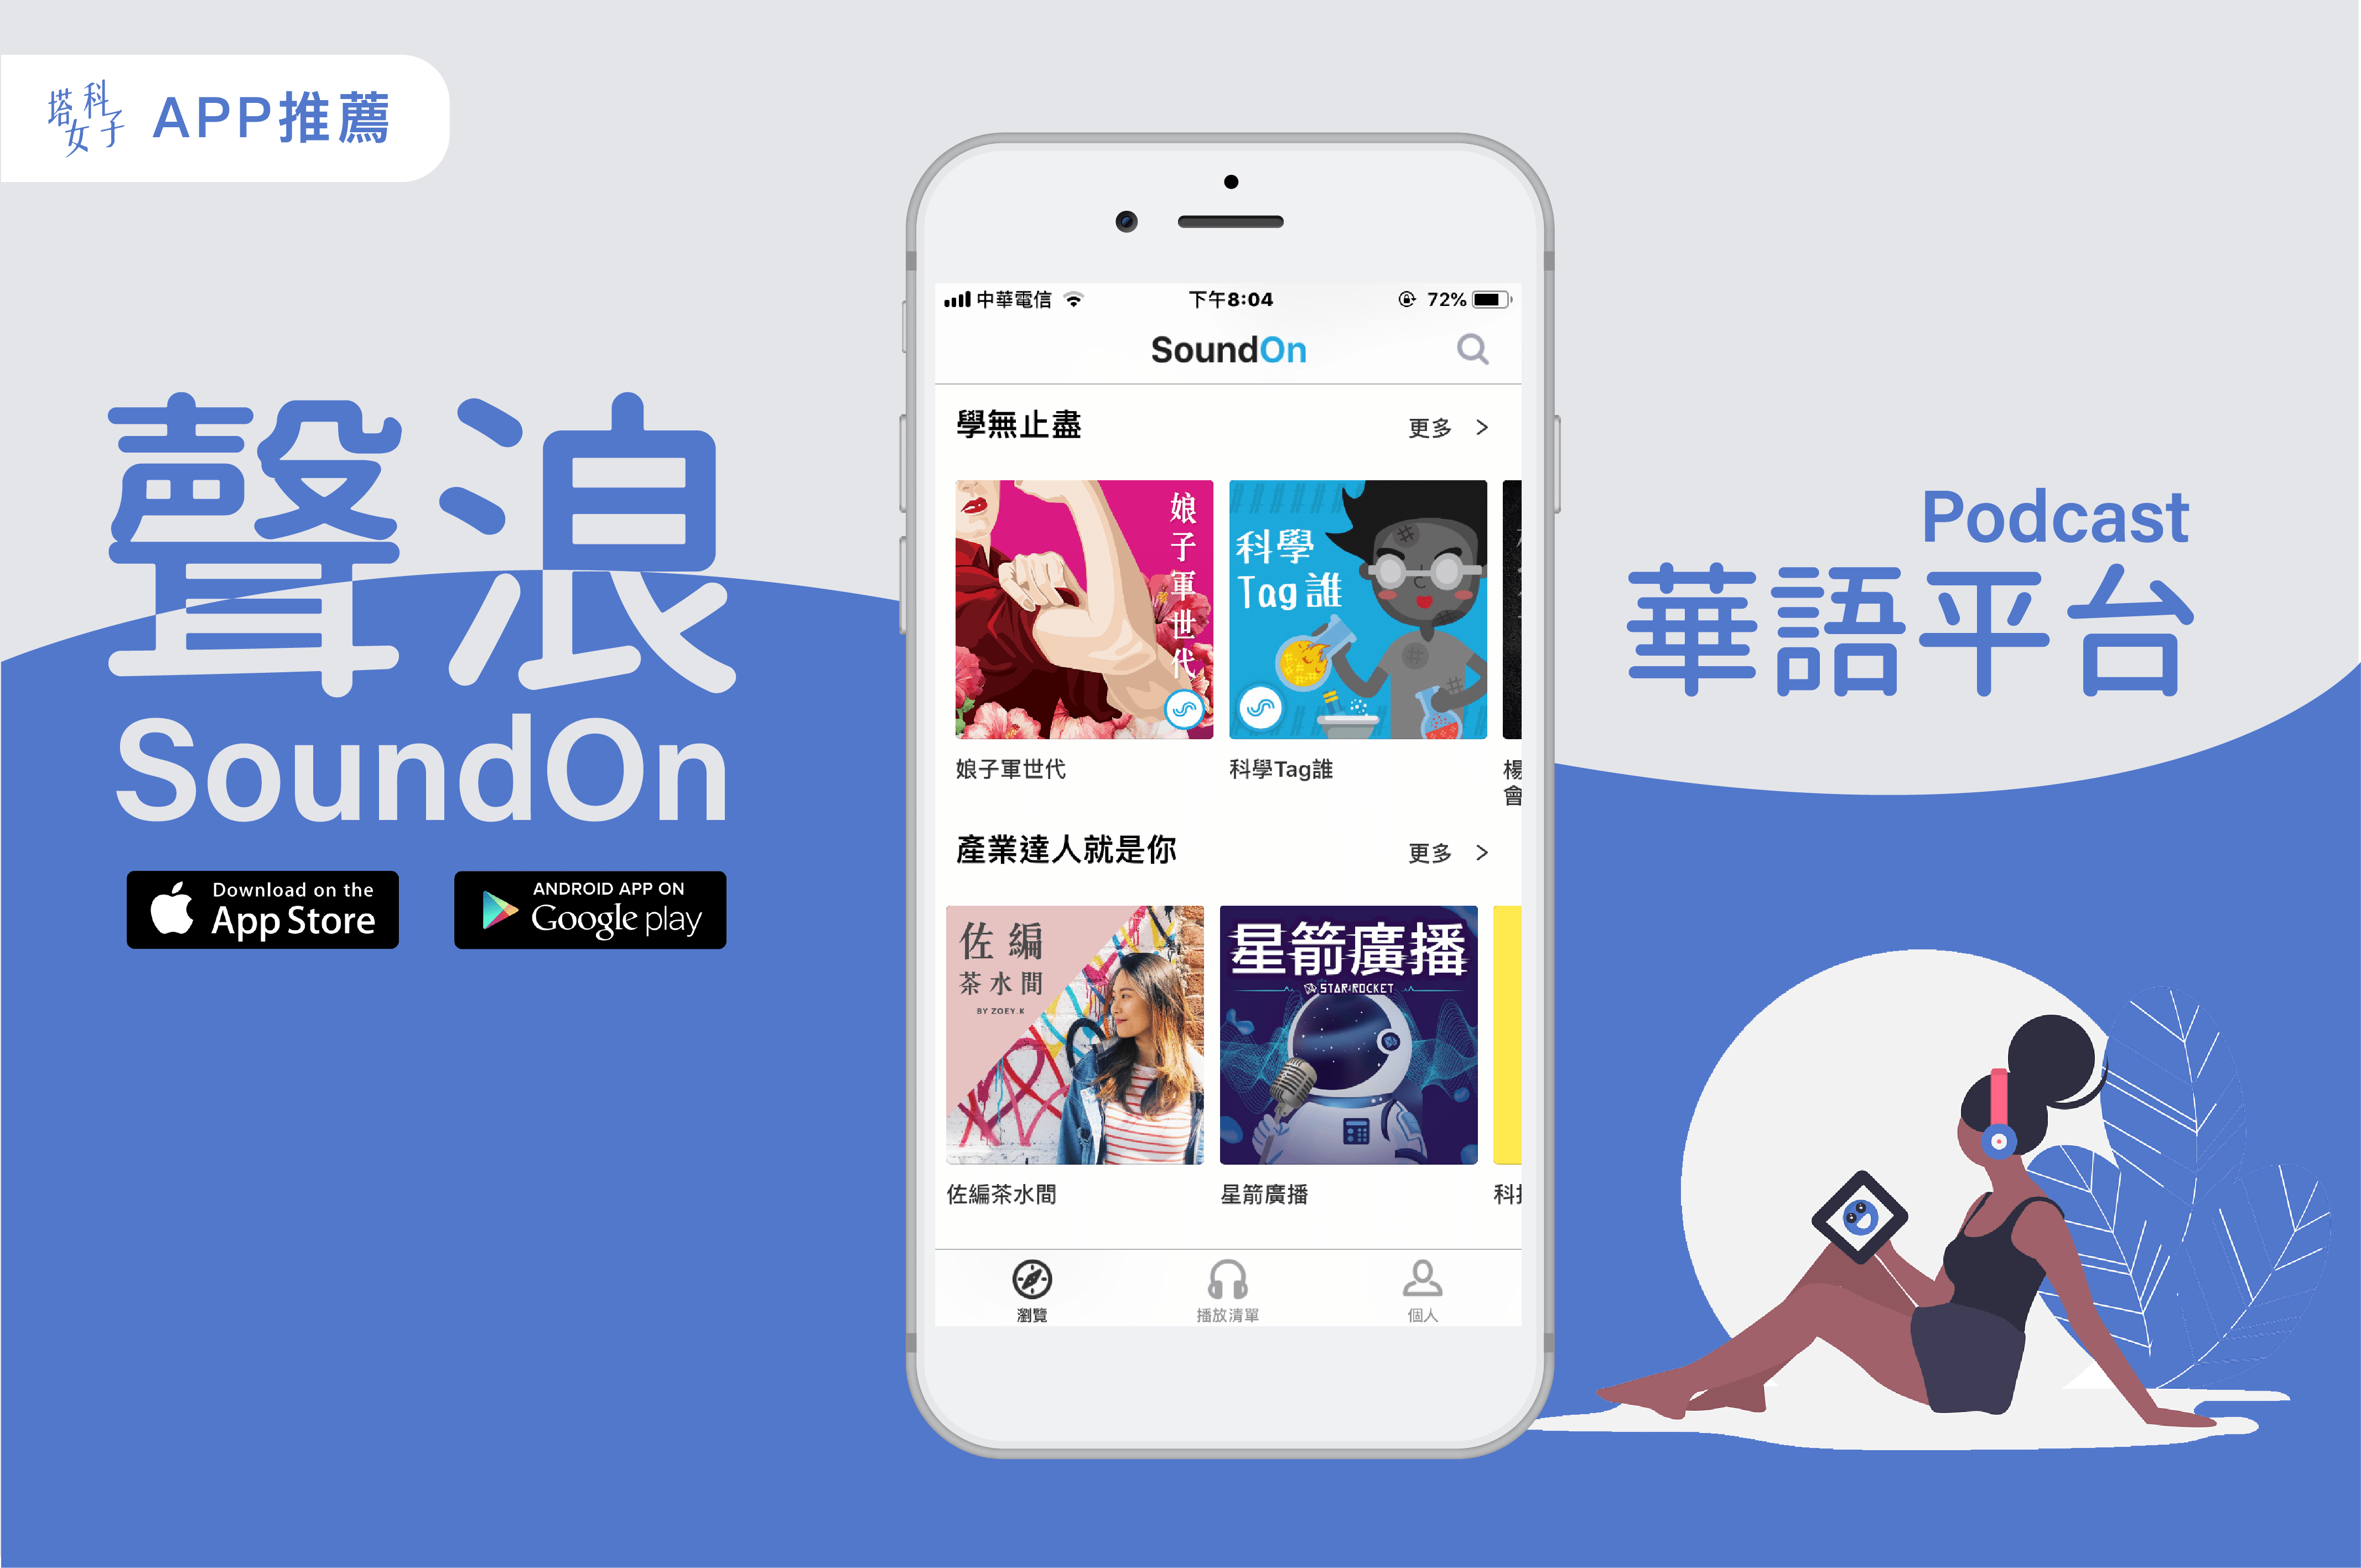 Podcast 中文 - SoundOn 聲浪